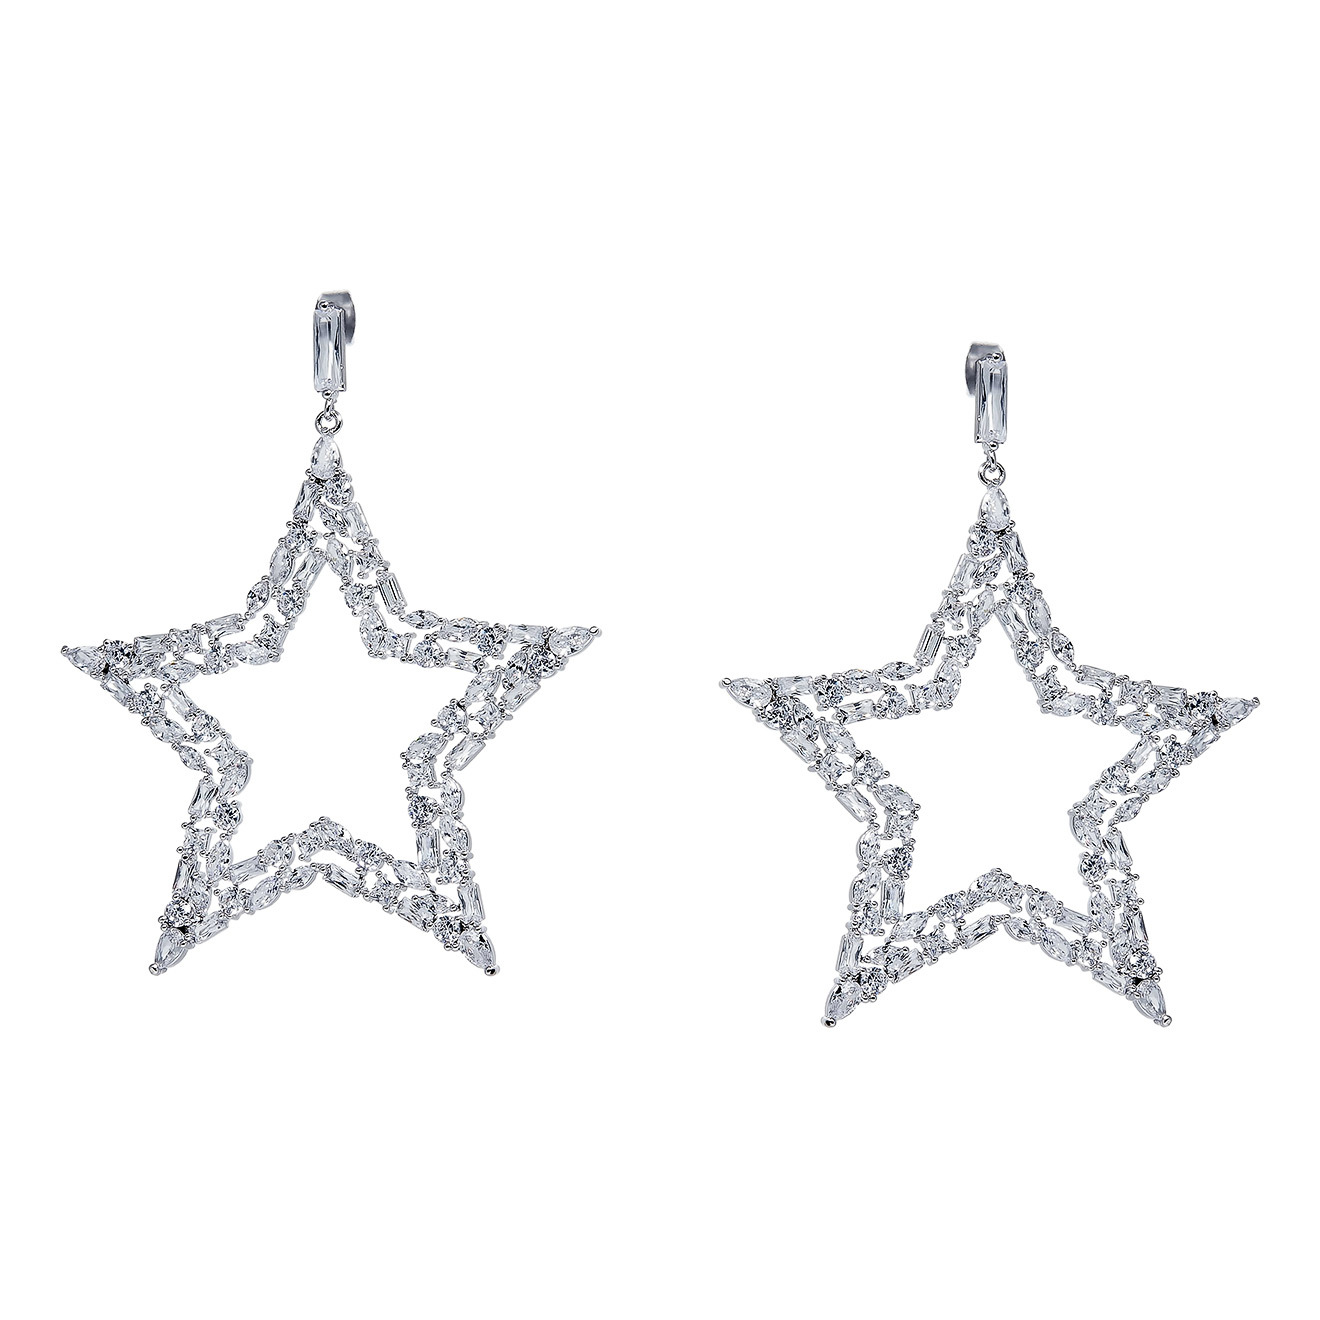 Herald Percy Серебристые серьги-звезды с кристаллами herald percy серебристые серьги с белыми кристаллами и розовой эмалью